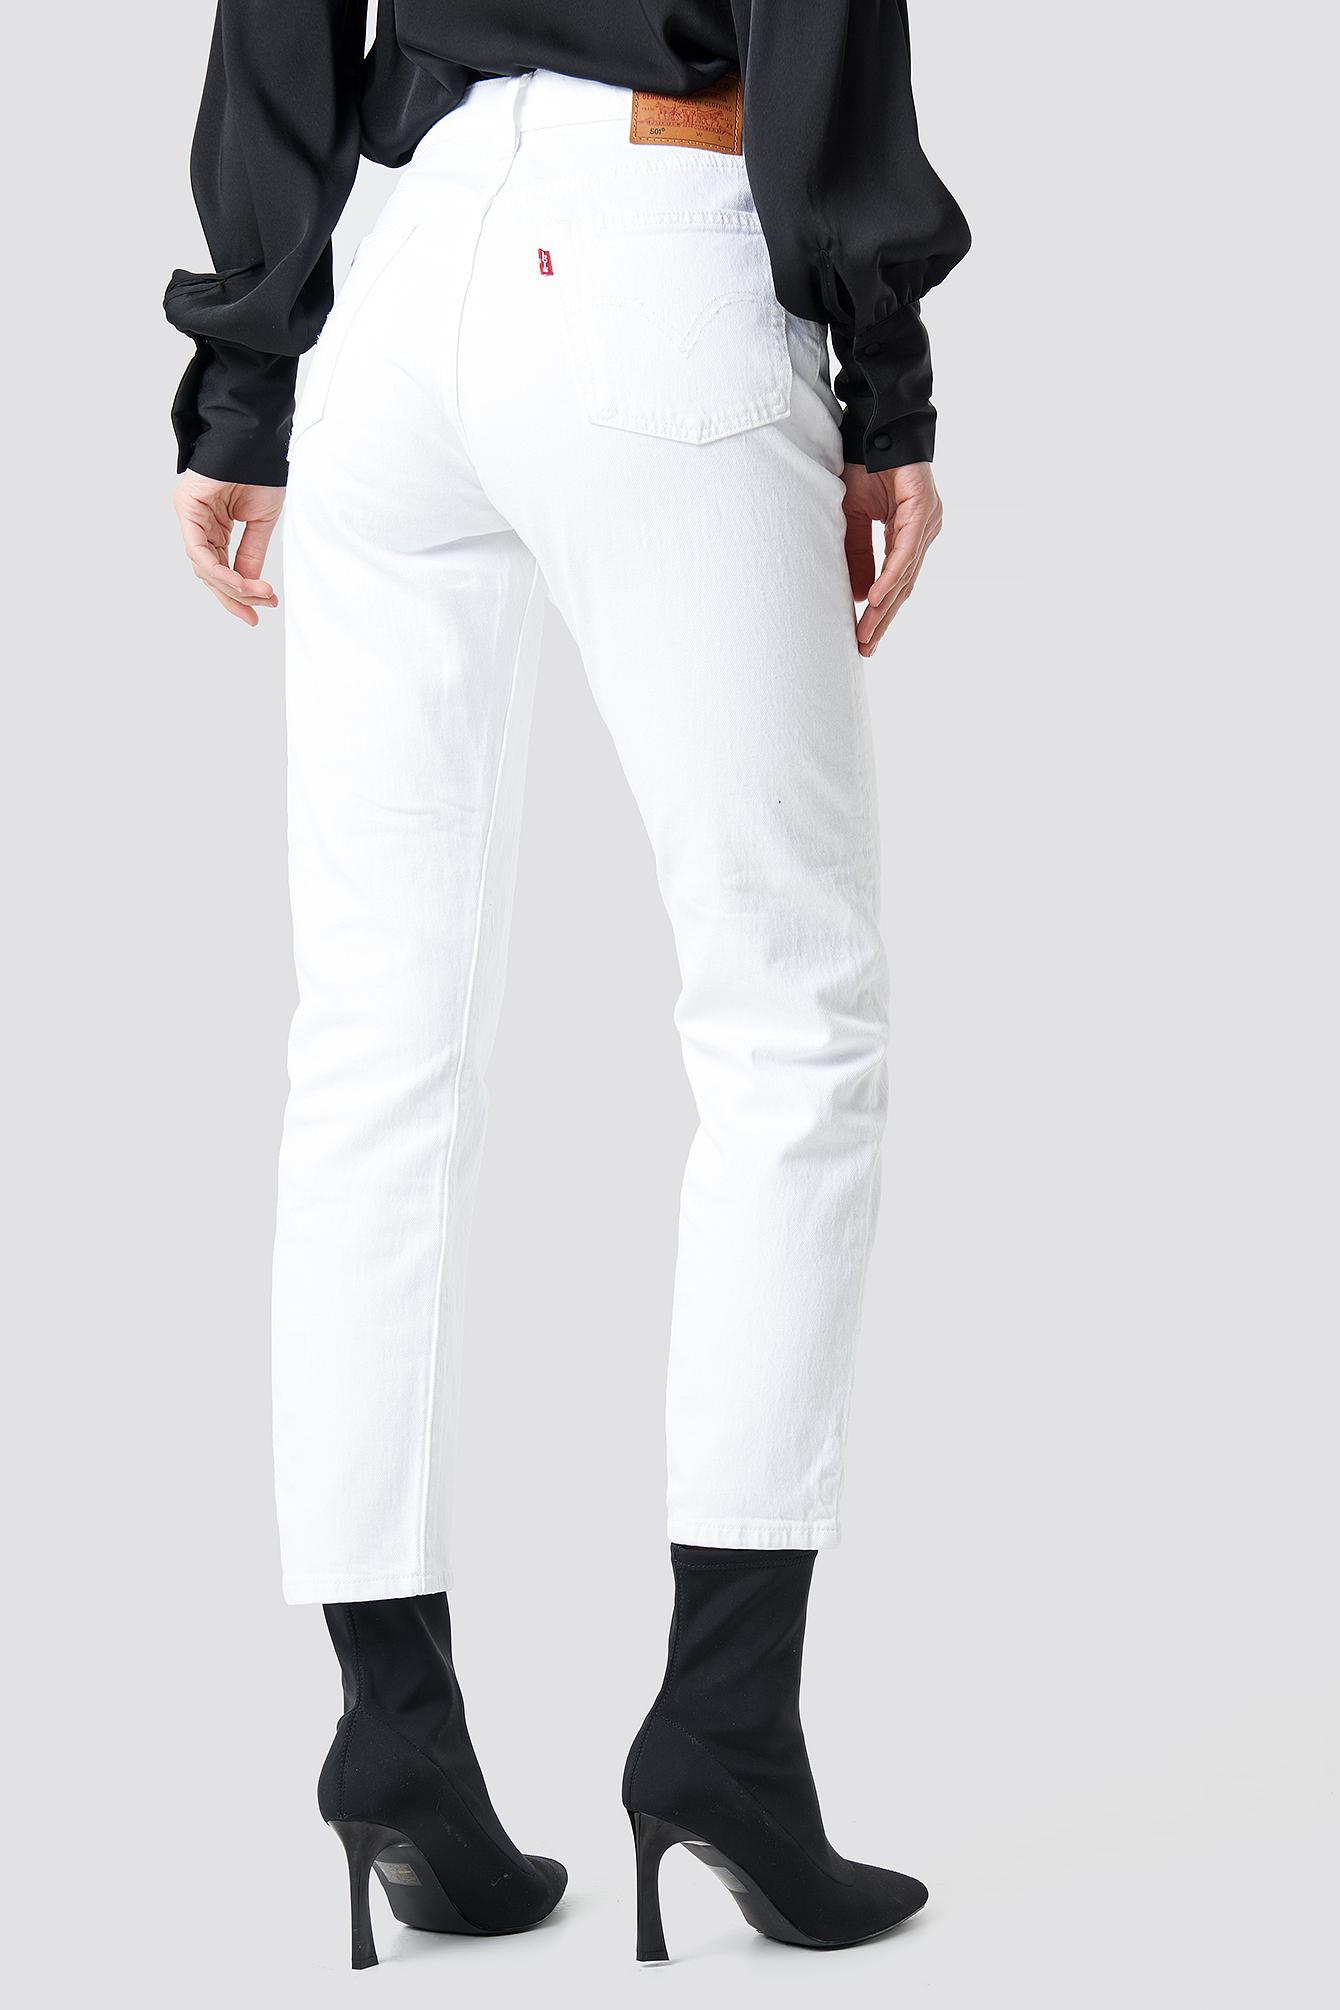 501 crop jeans white